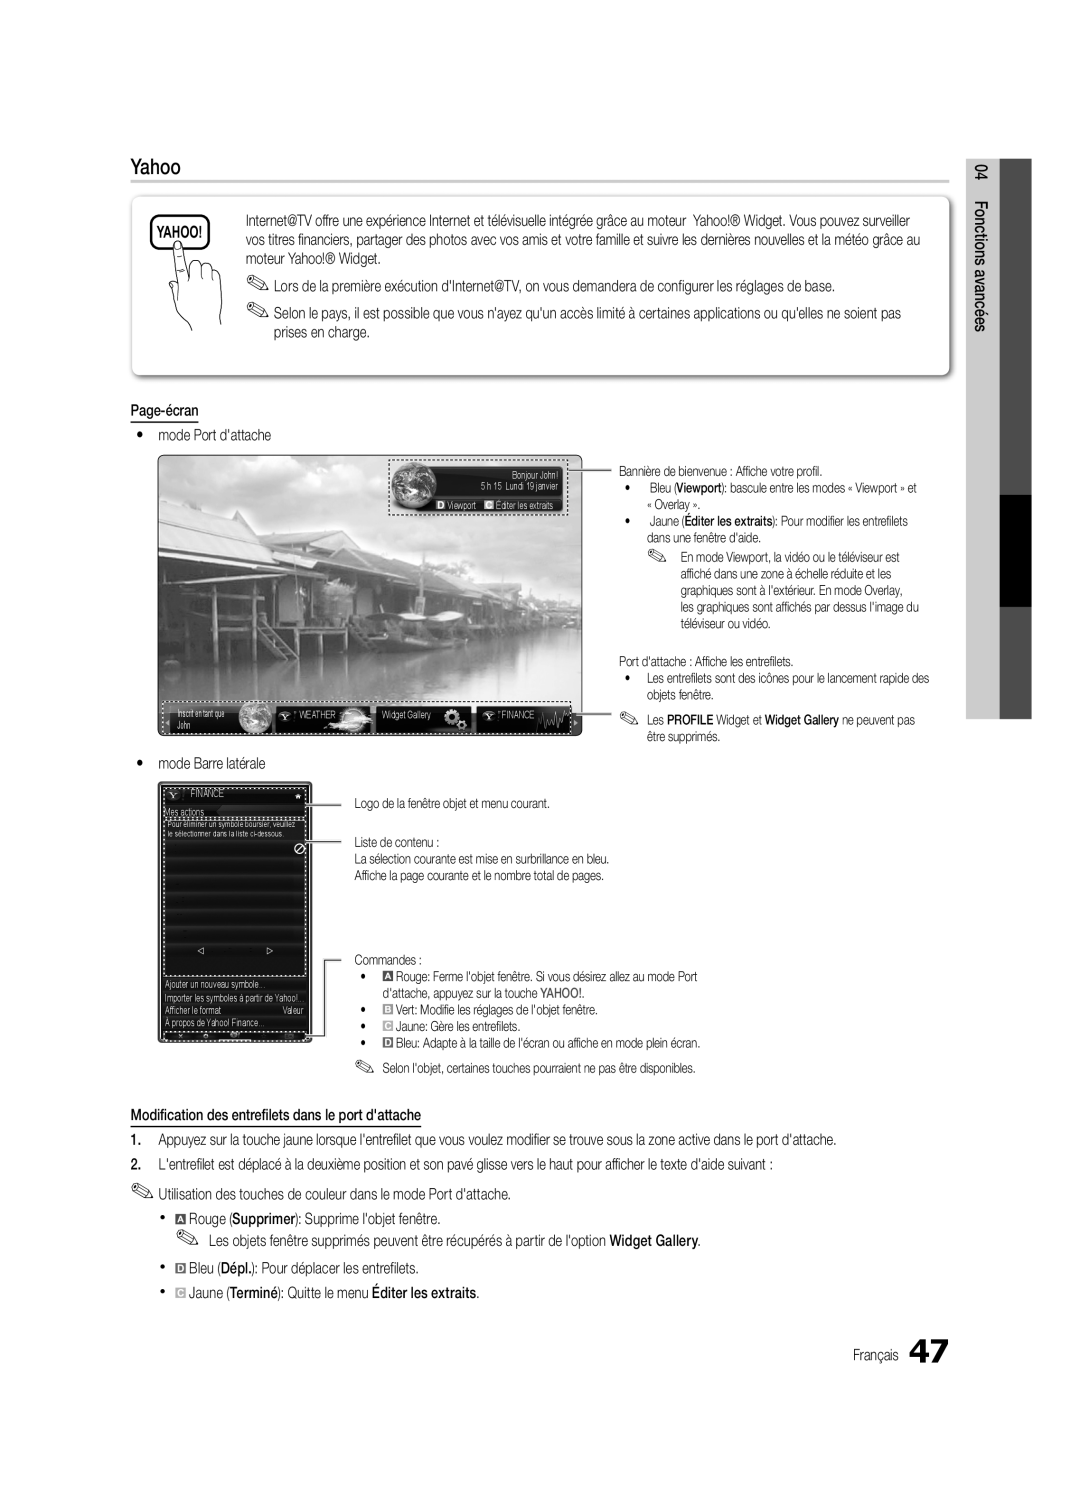 Samsung UC6500-ZC, BN68-02711B-04 user manual Yahoo, Bannière de bienvenue Affi che votre profi l 